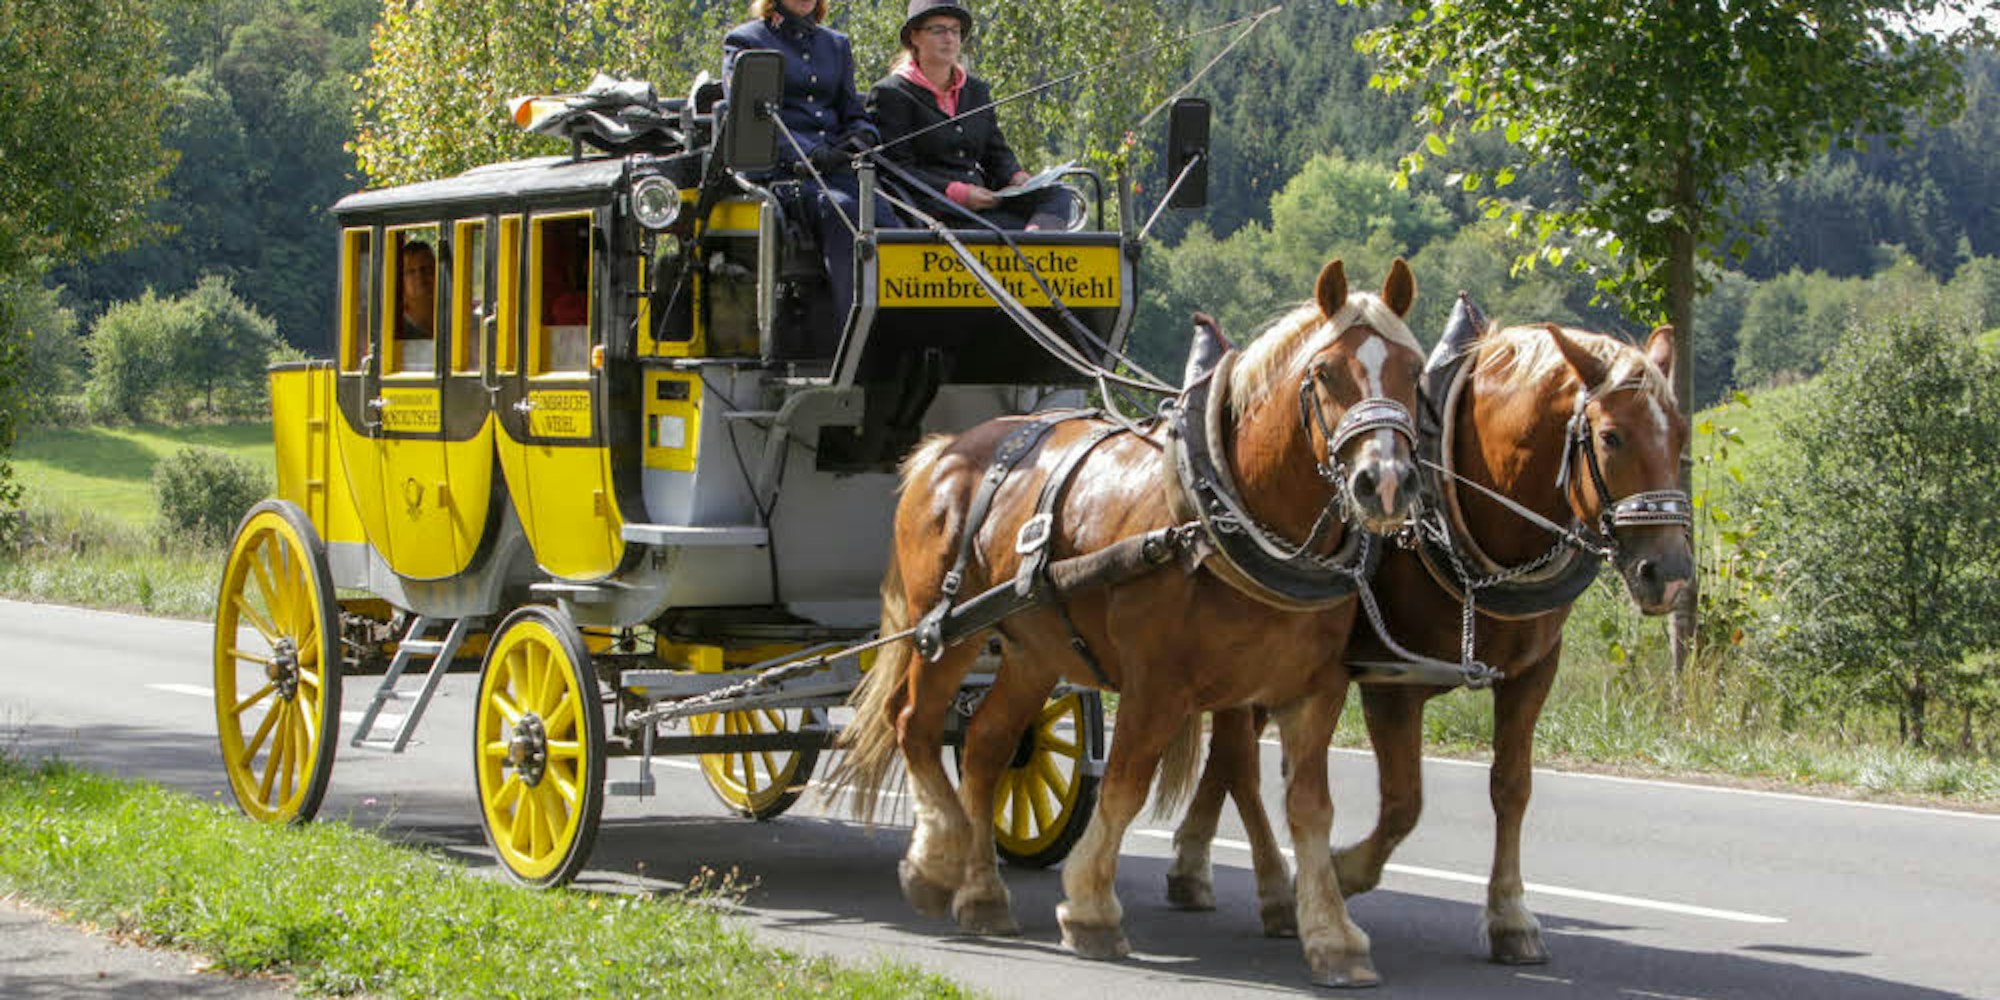 Mit dem Ende dieses Monats ist auch das Ende der Oberbergischen Postkutsche besiegelt, zumindest im touristischen Linienverkehr zwischen Nümbrecht und Wiehl.